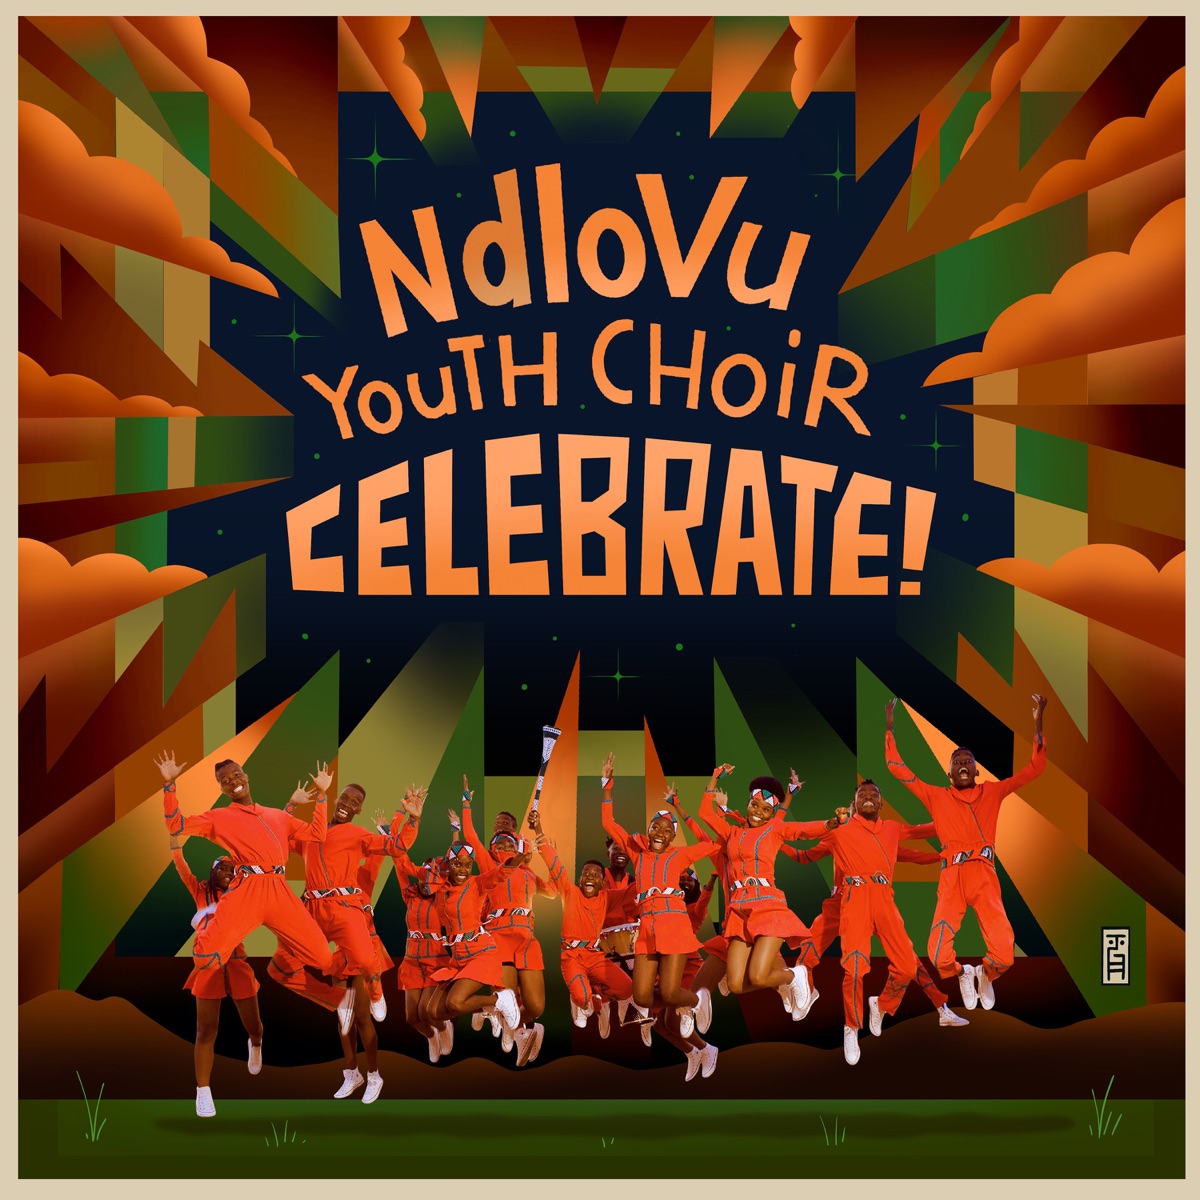 MP3: Ndlovu Youth Choir – Pata Pata